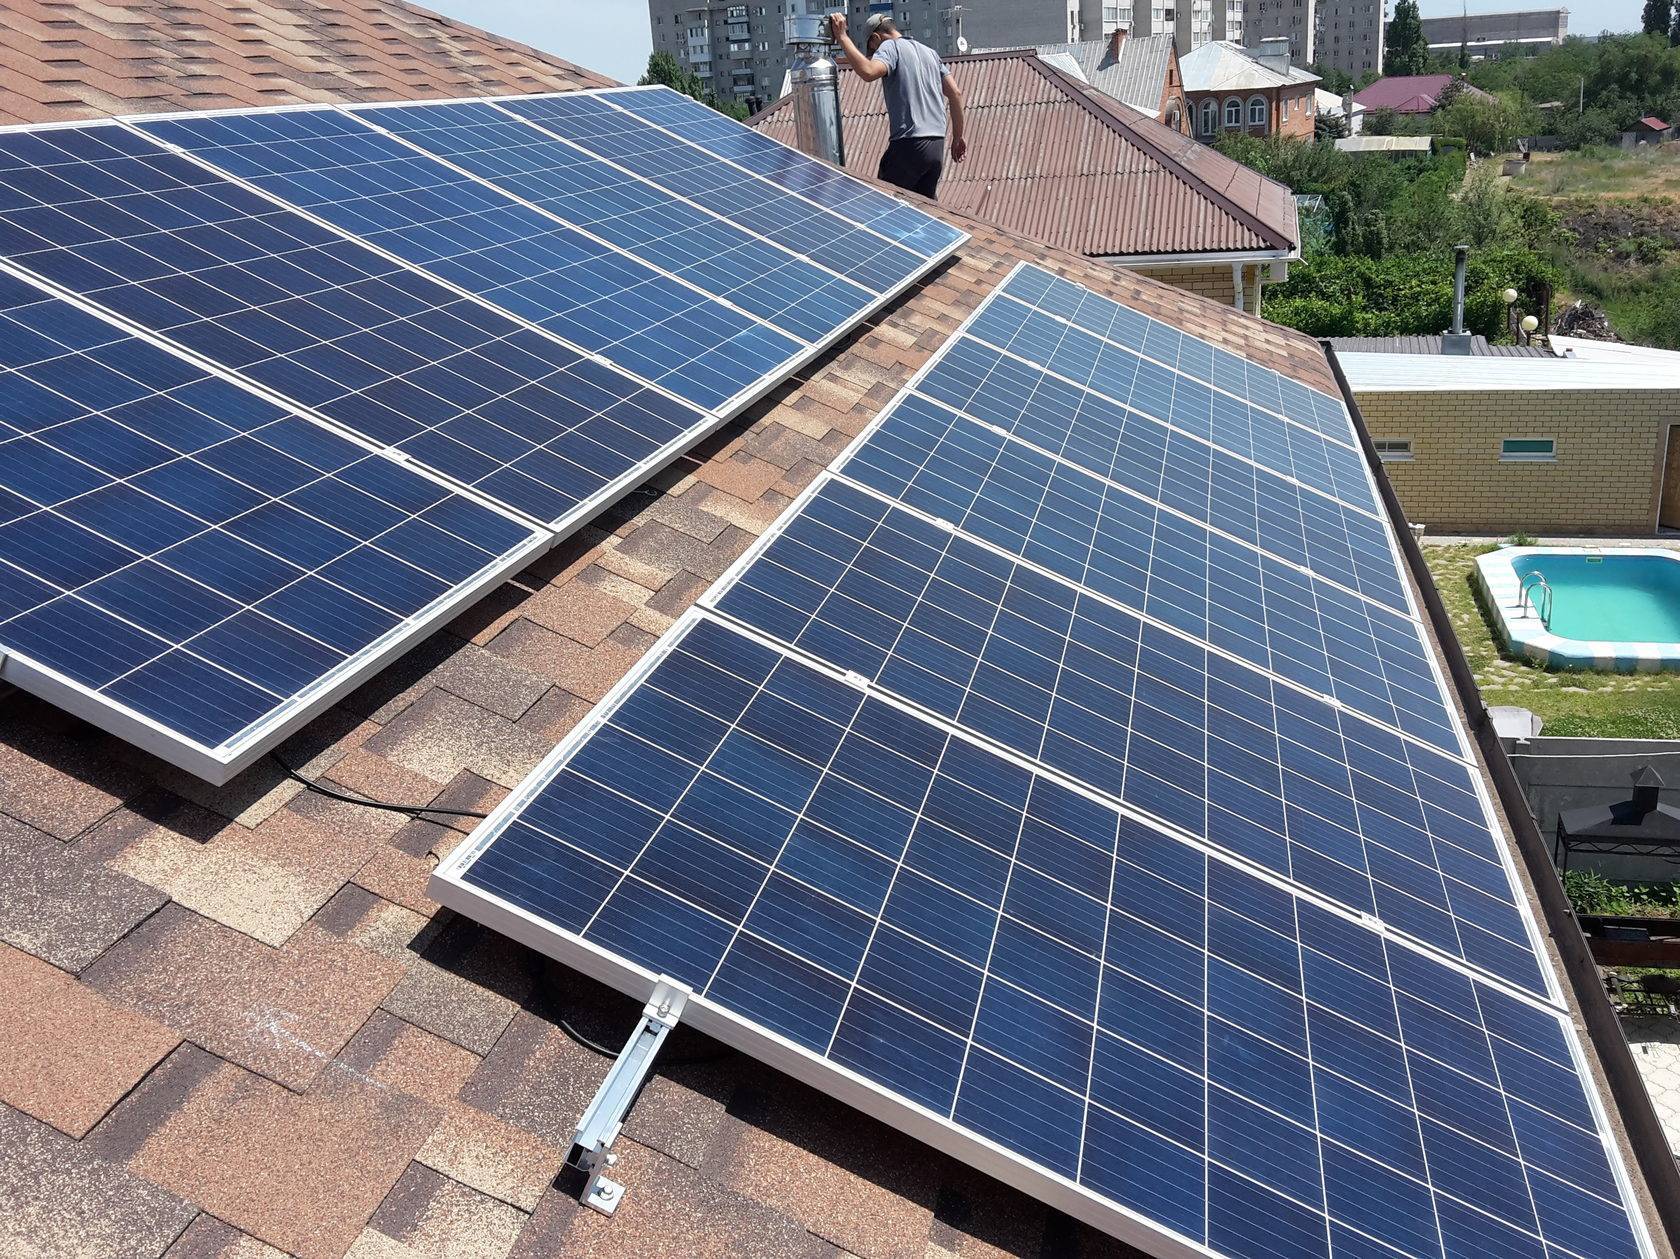 Солнечные батареи: для дома, на улицах, для подзарядки, в медицине